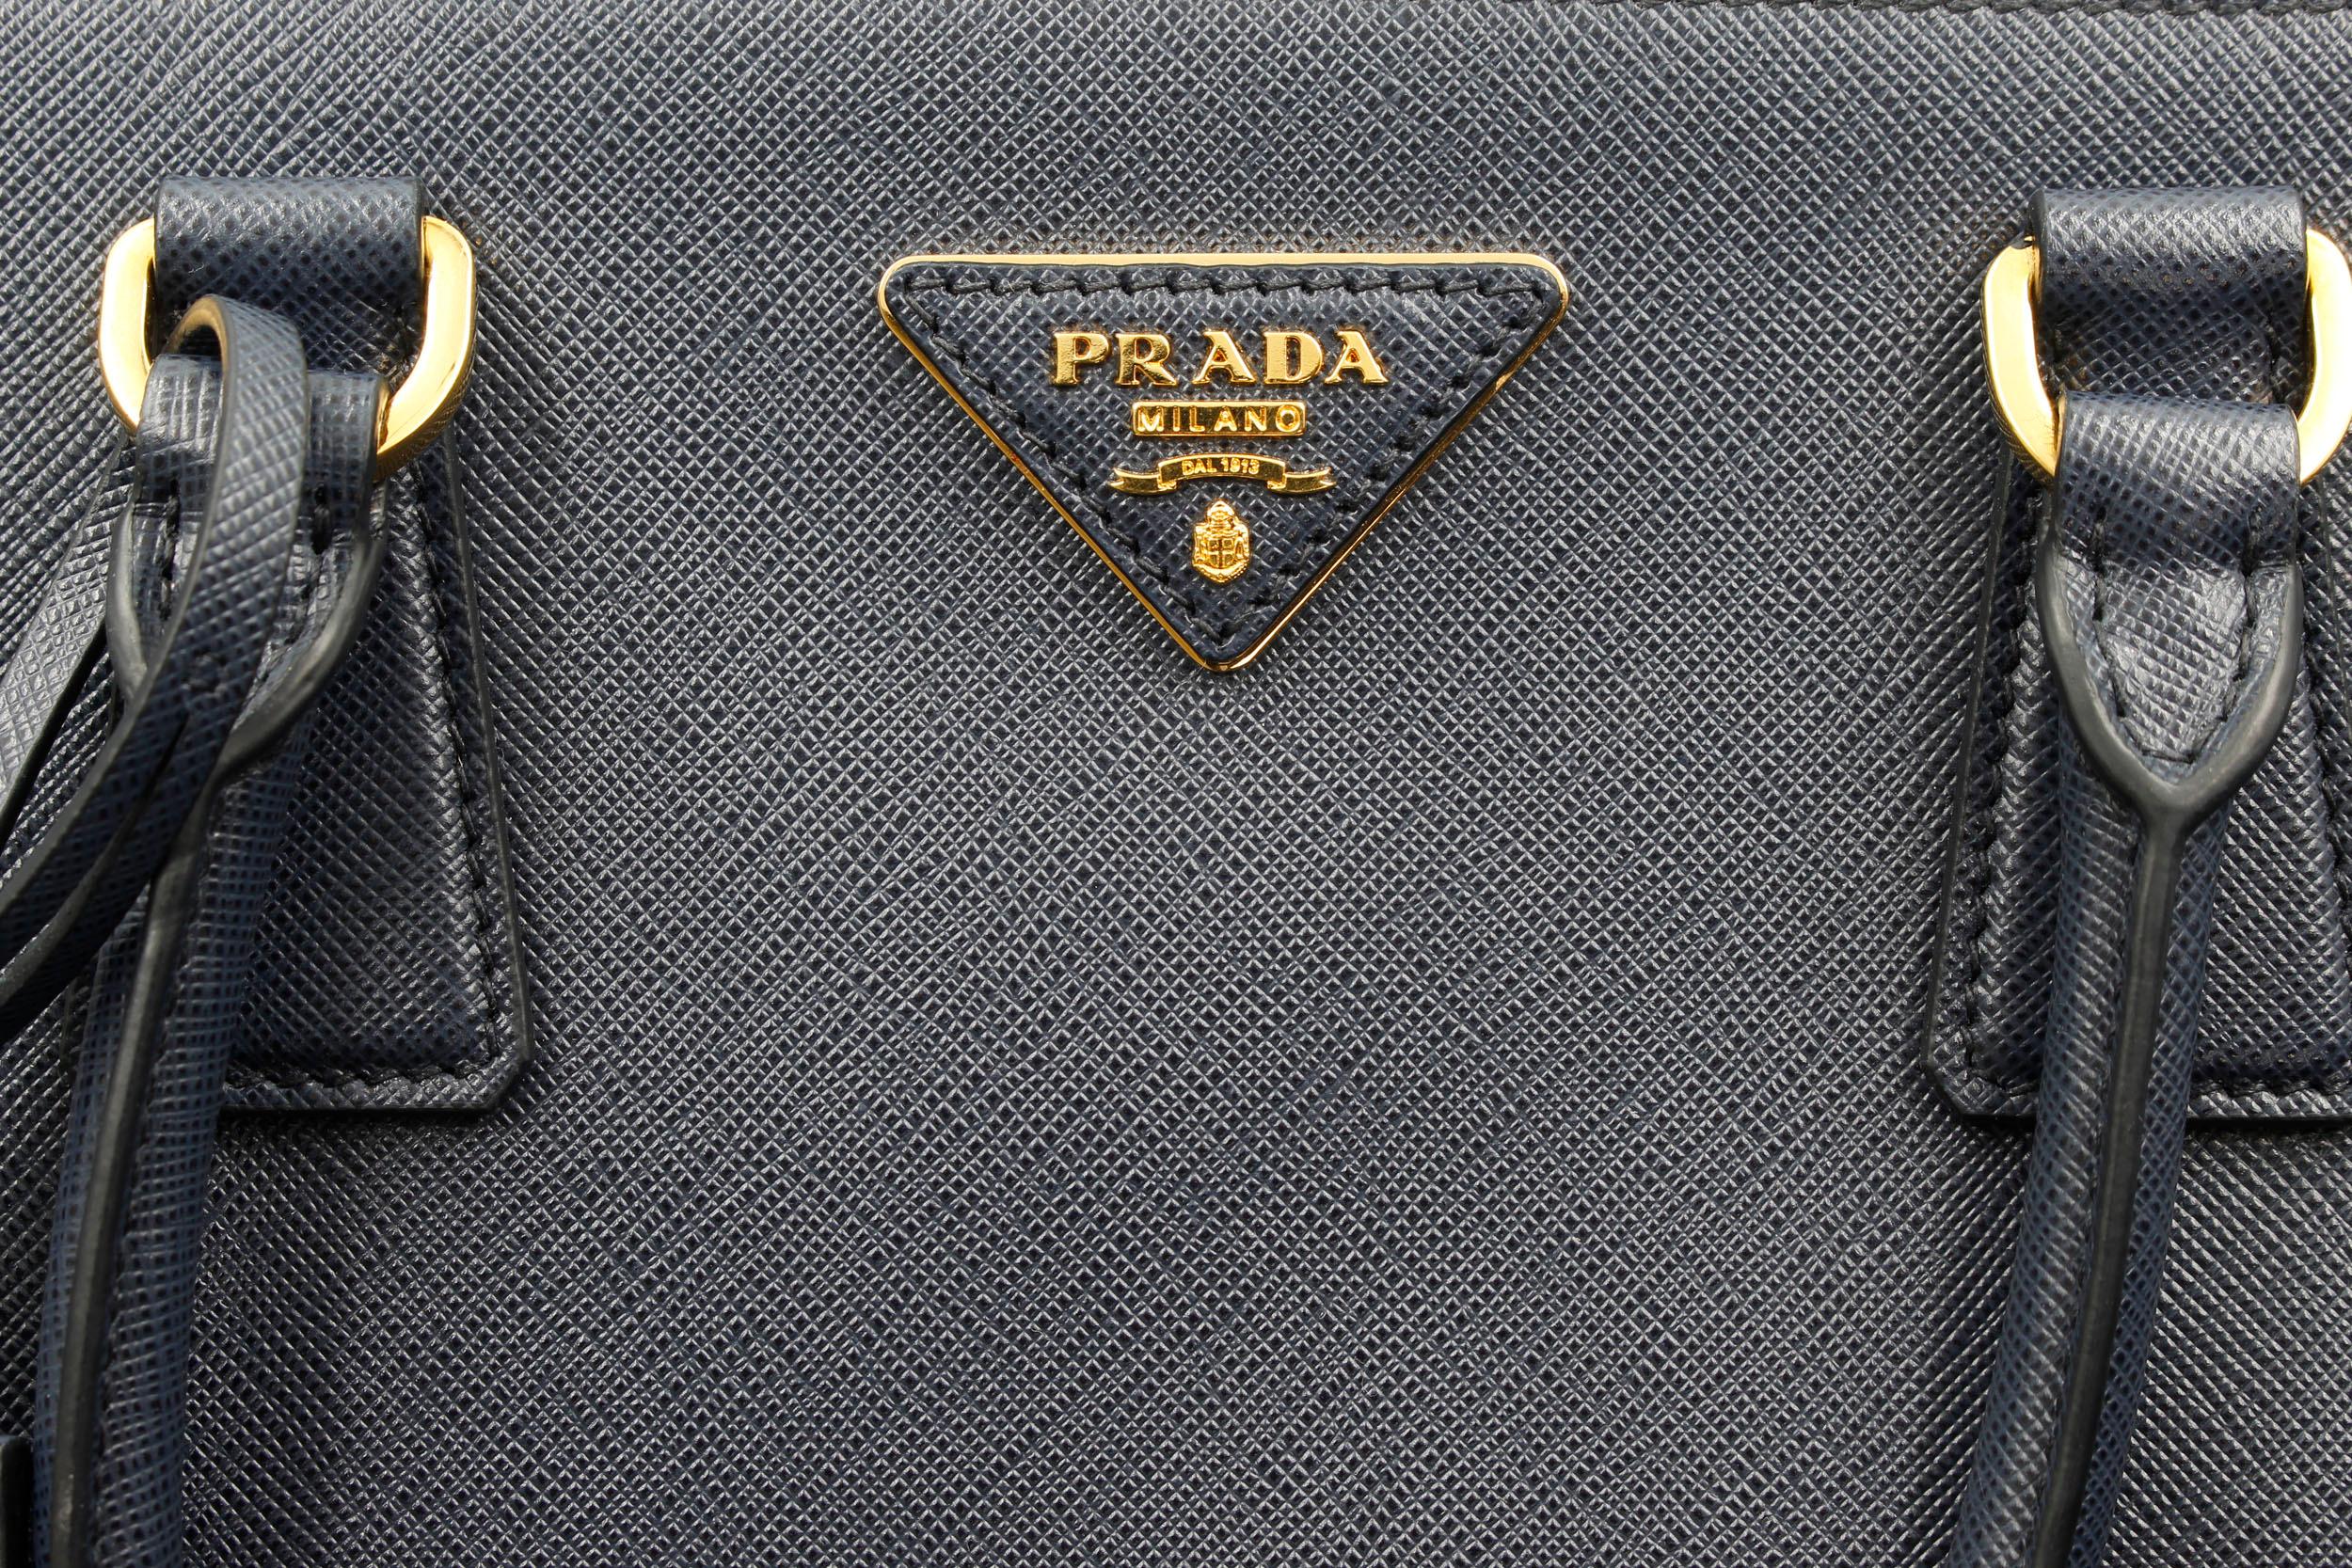 prada bag navy blue